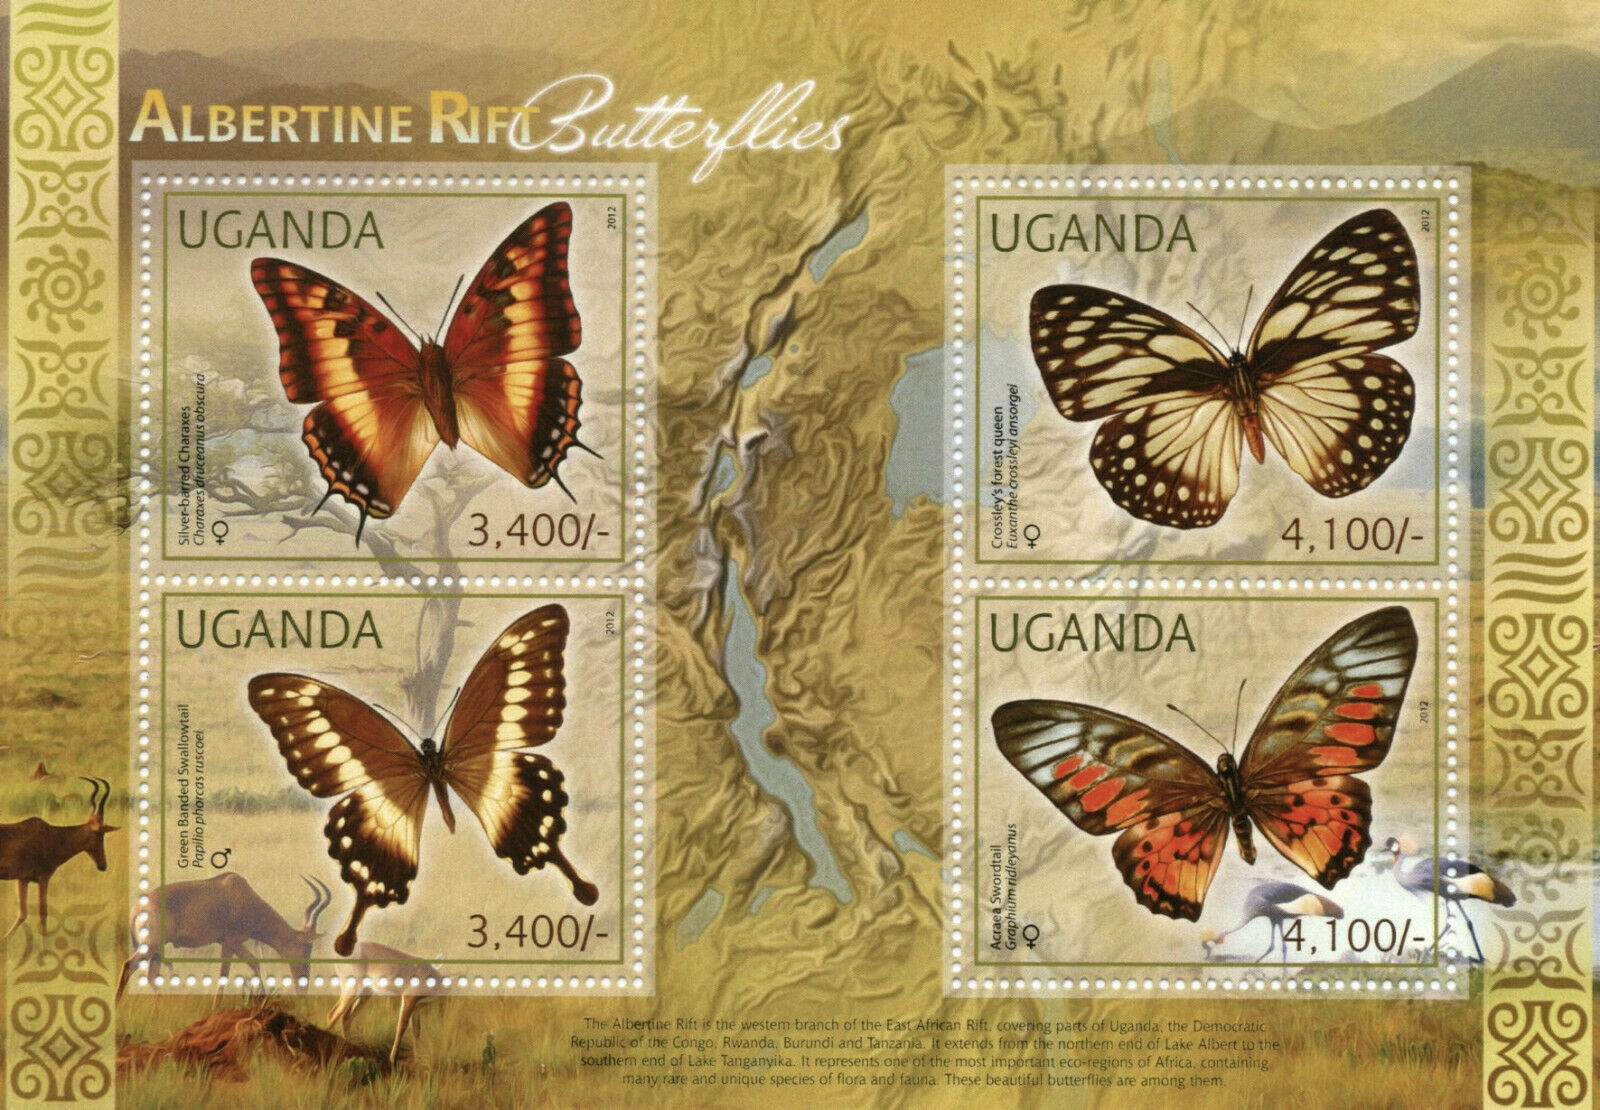 Uganda Butterflies Stamps 2012 MNH Albertine Rift Butterfly Fauna 4v M/S